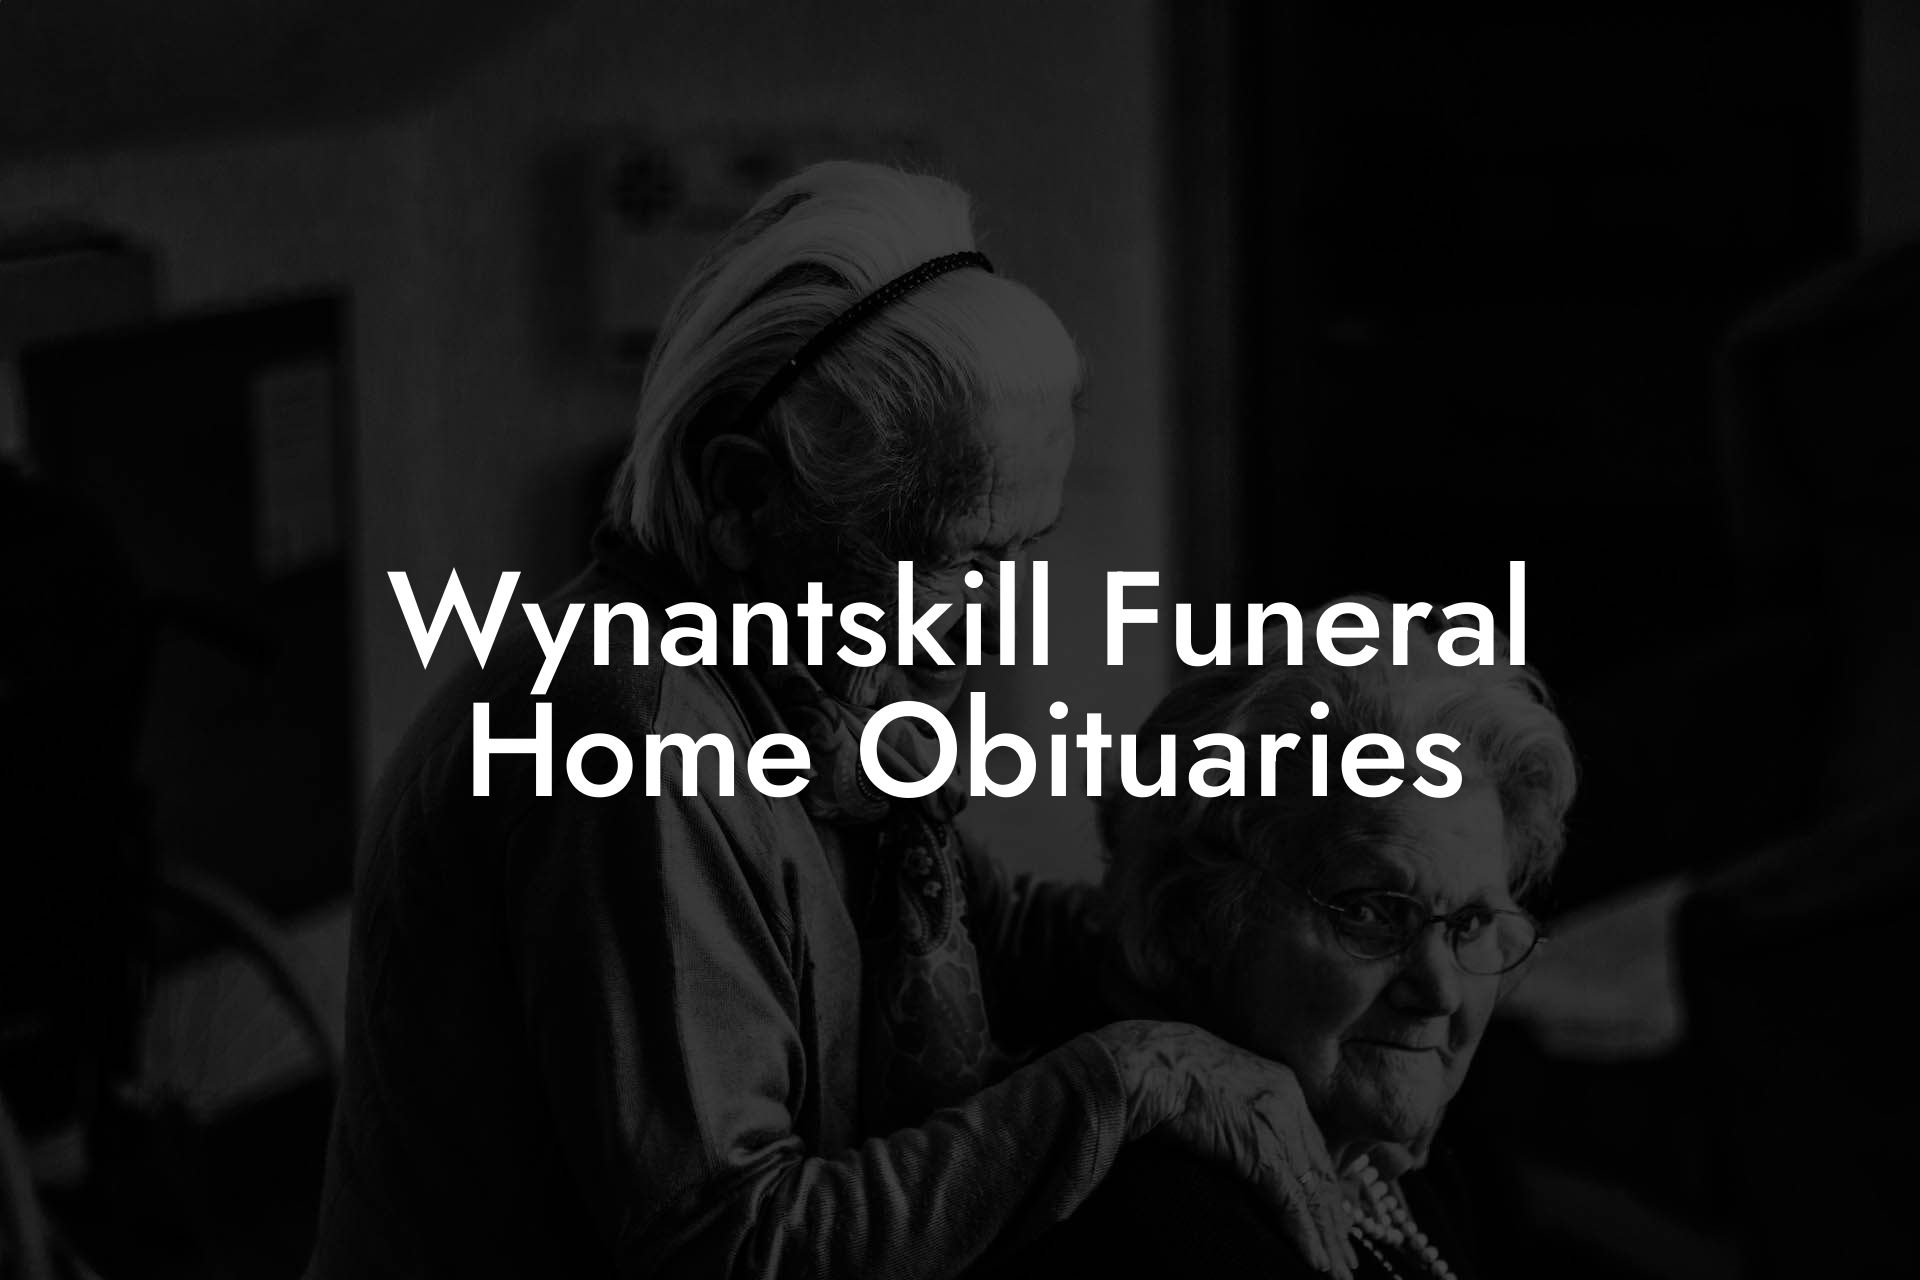 Wynantskill Funeral Home Obituaries